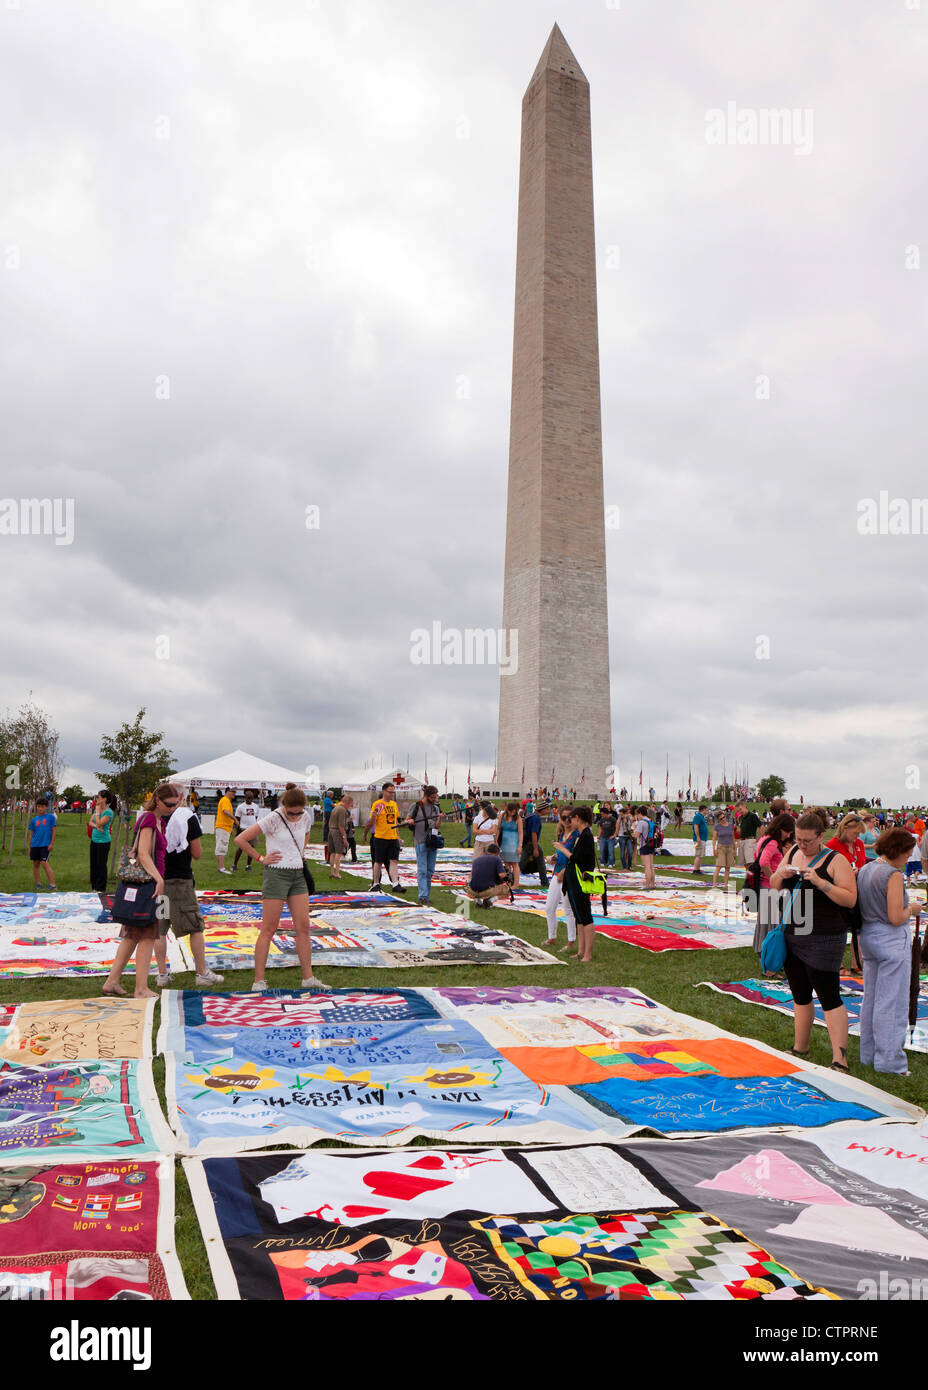 AIDS Memorial Quilt pannelli sono messe in mostra sul Mall per contrassegnare il venticinquesimo anniversario della sua fondazione - Luglio 22, 2012, Washington DC, Stati Uniti d'America Foto Stock